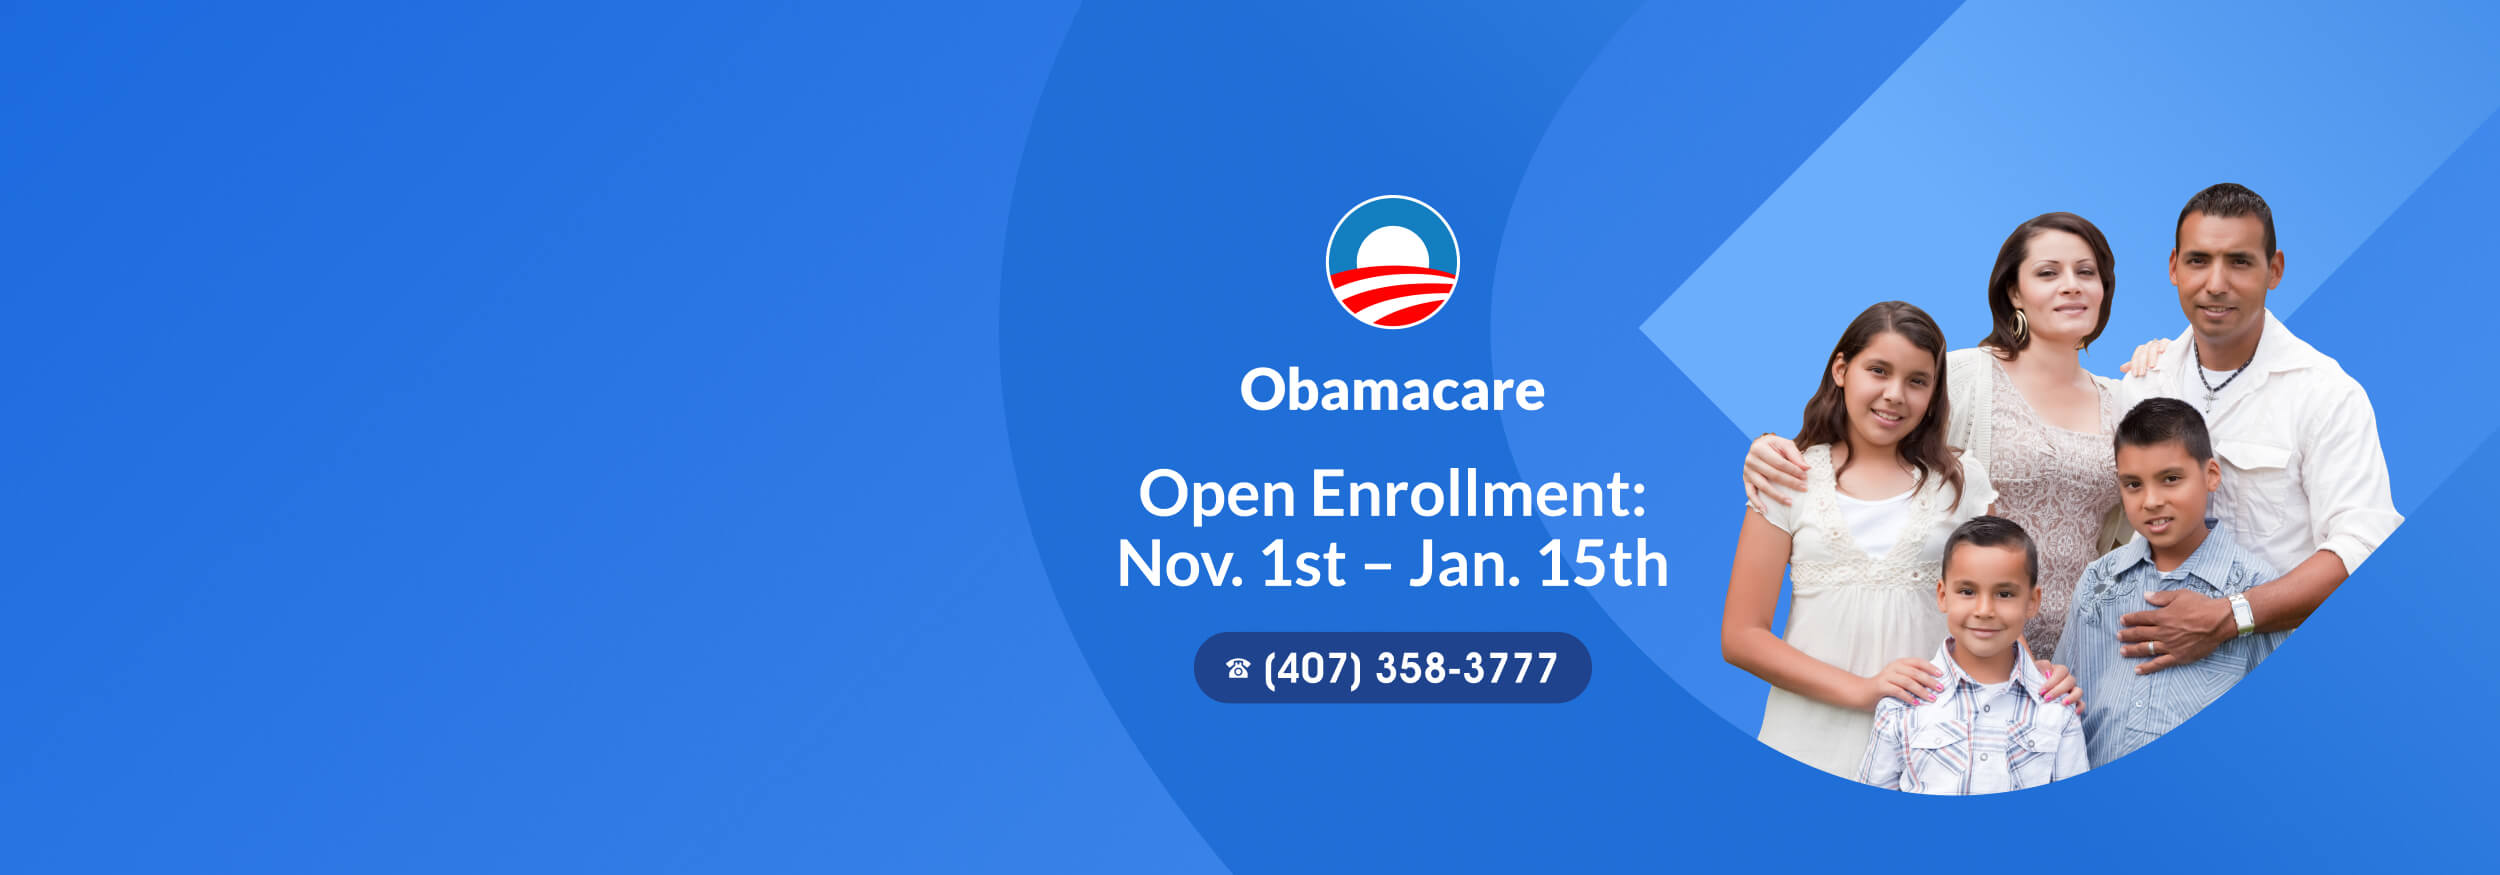 Obamacare Open Enrollment